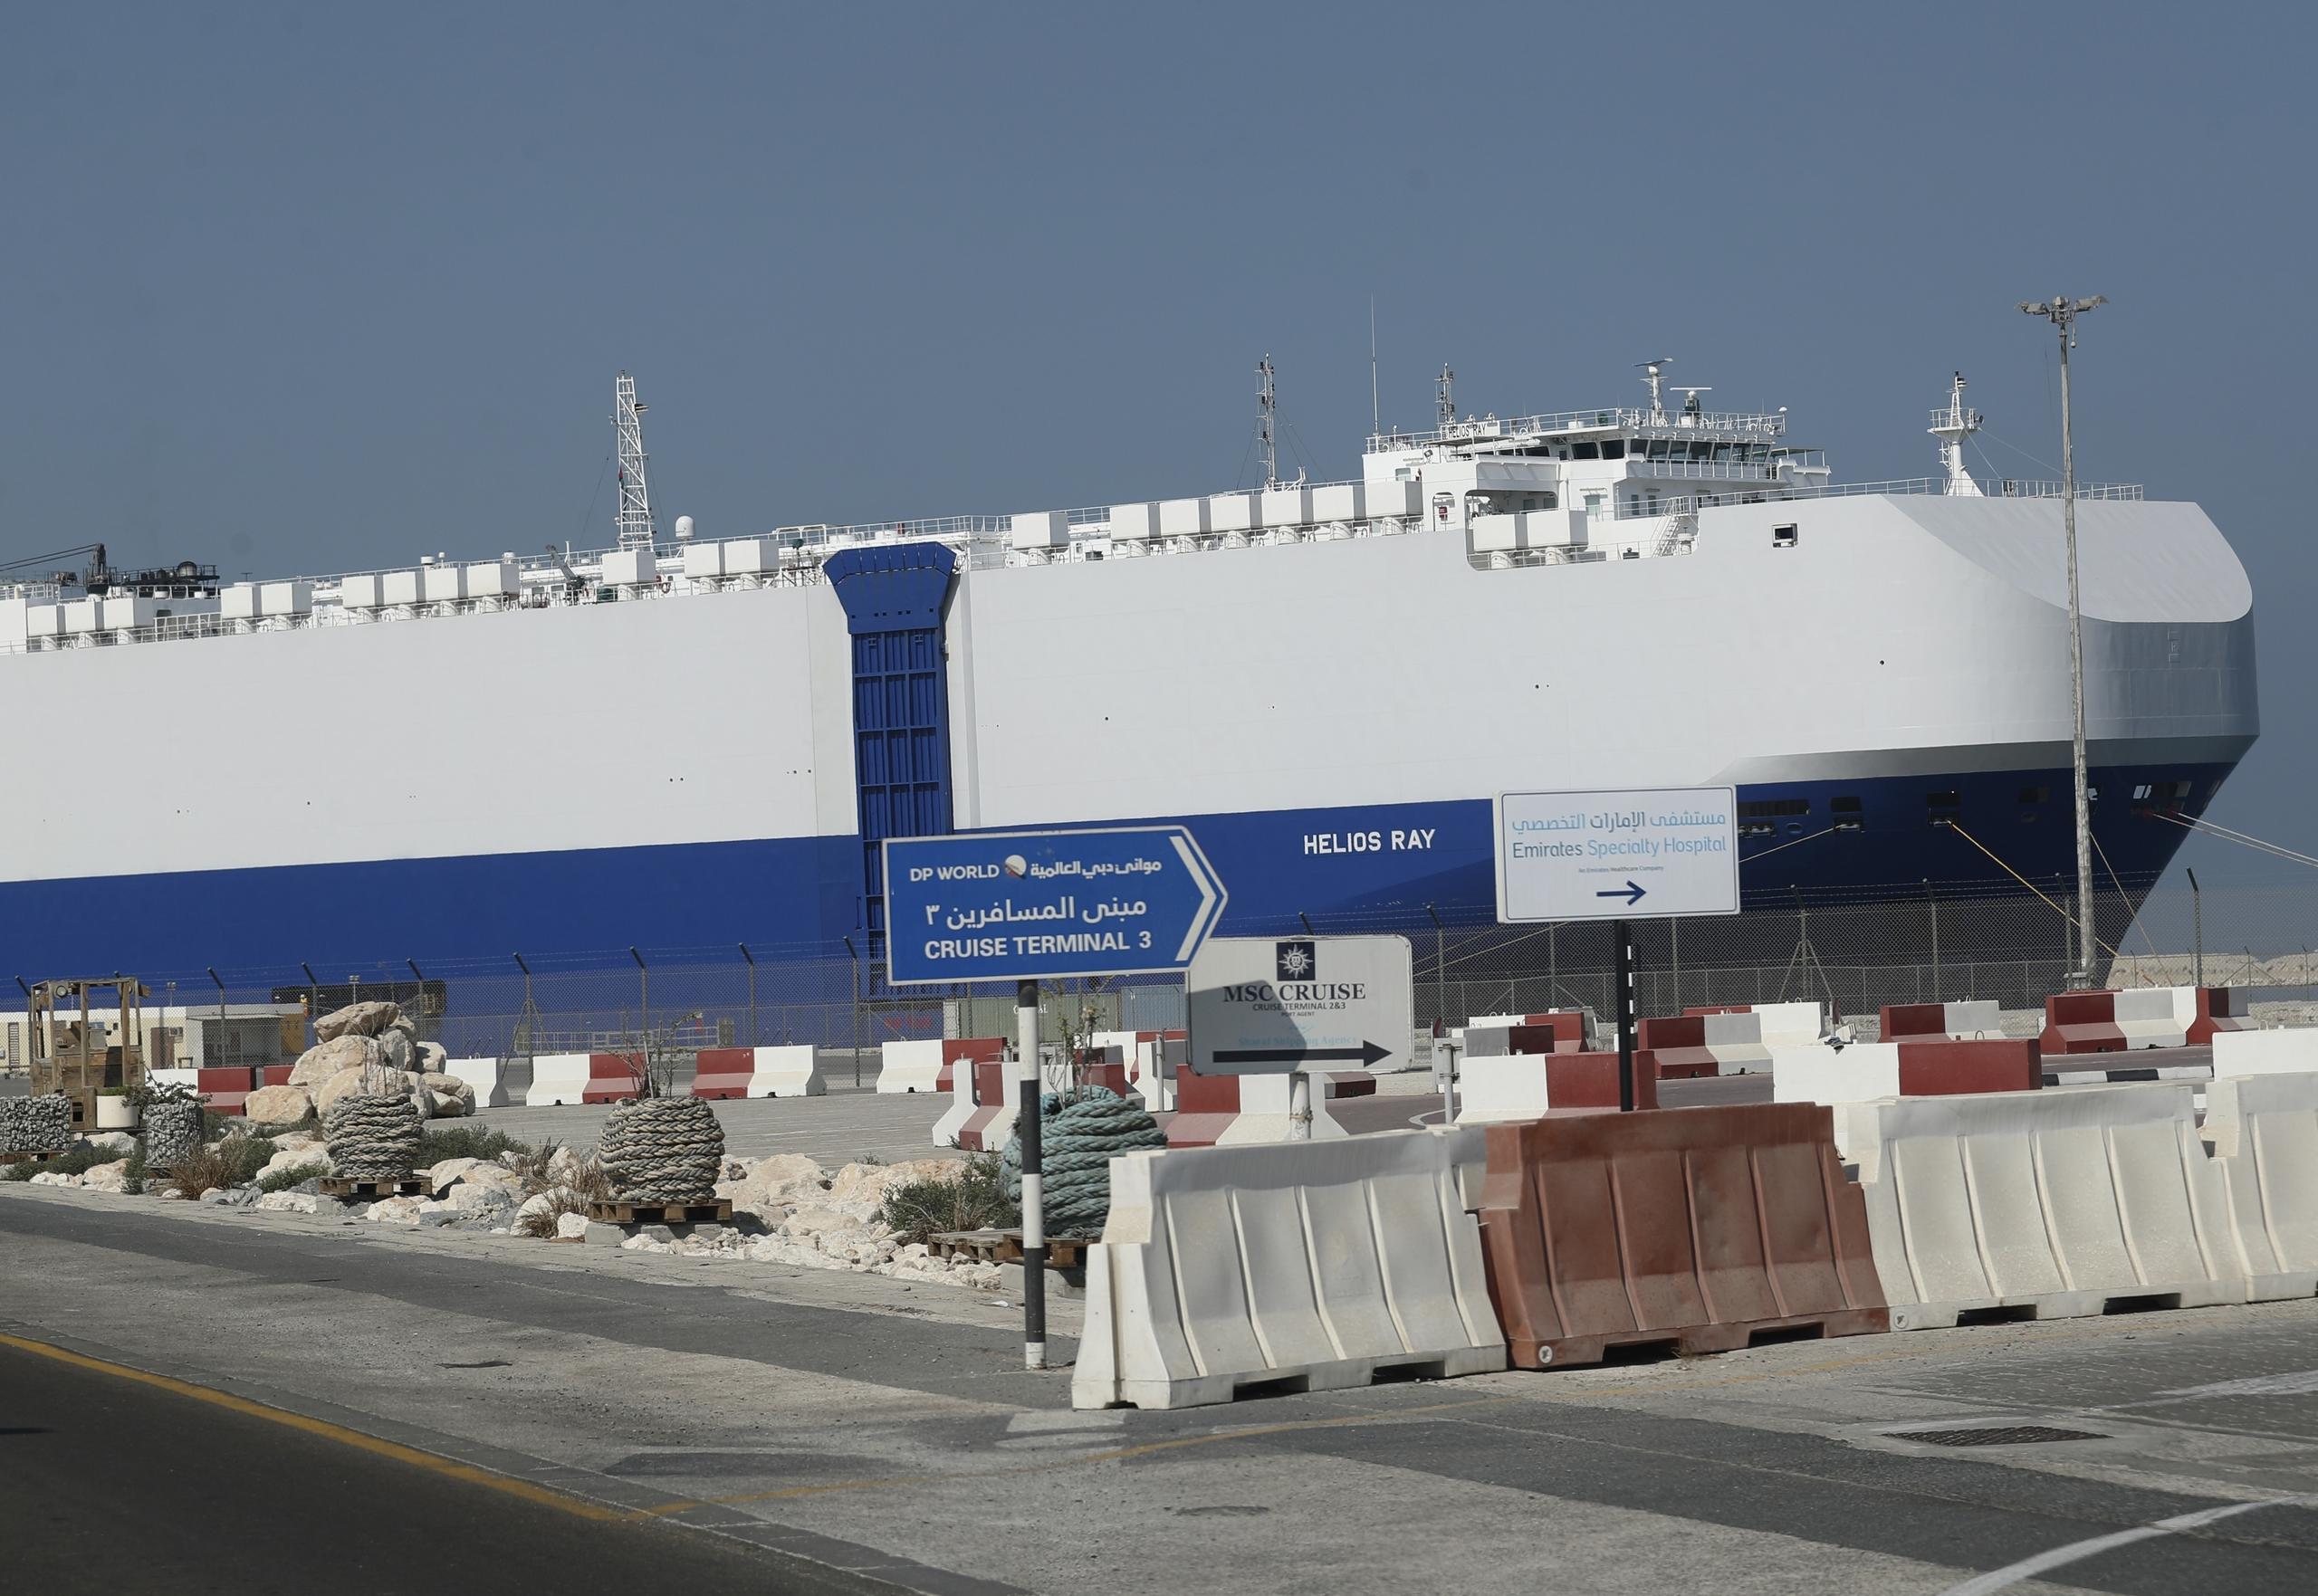 El carguero de propiedad israelí Helios Ray, se ve en puerto en Dubái, Emiratos Árabes Unidos.